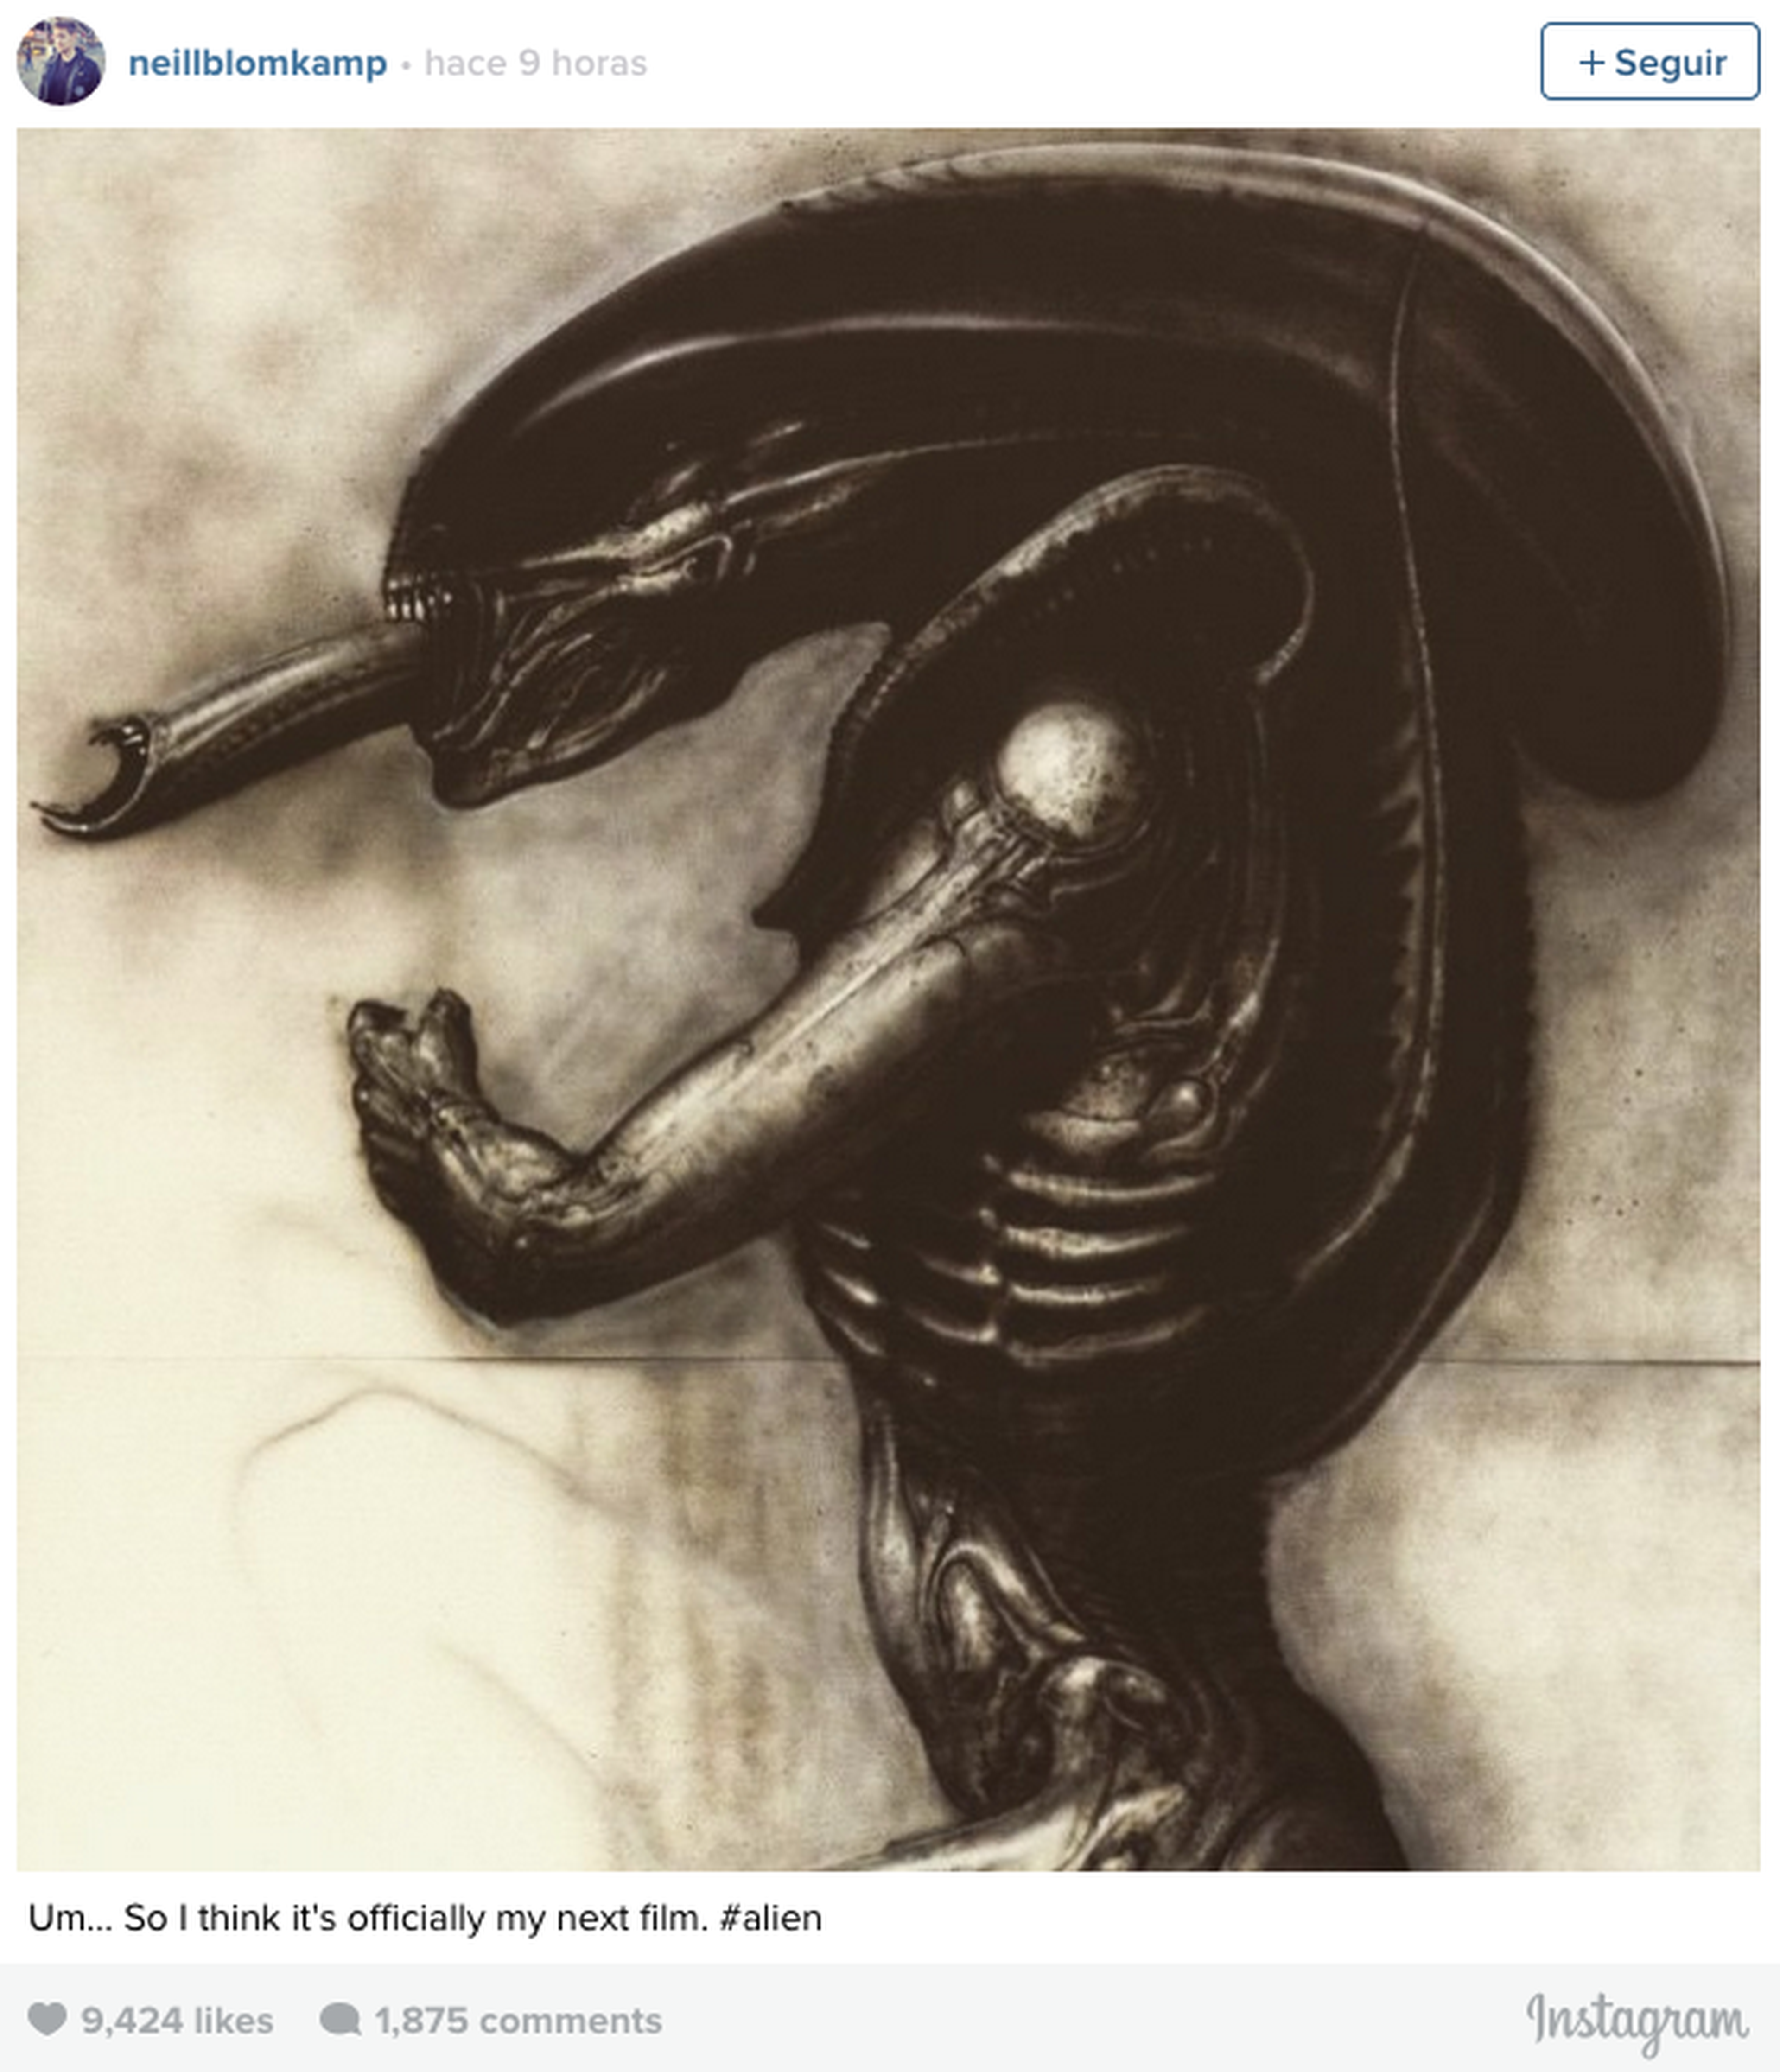 Alien 5 será dirigida por Neil Blomkamp y se estrenará después de Prometheus 2